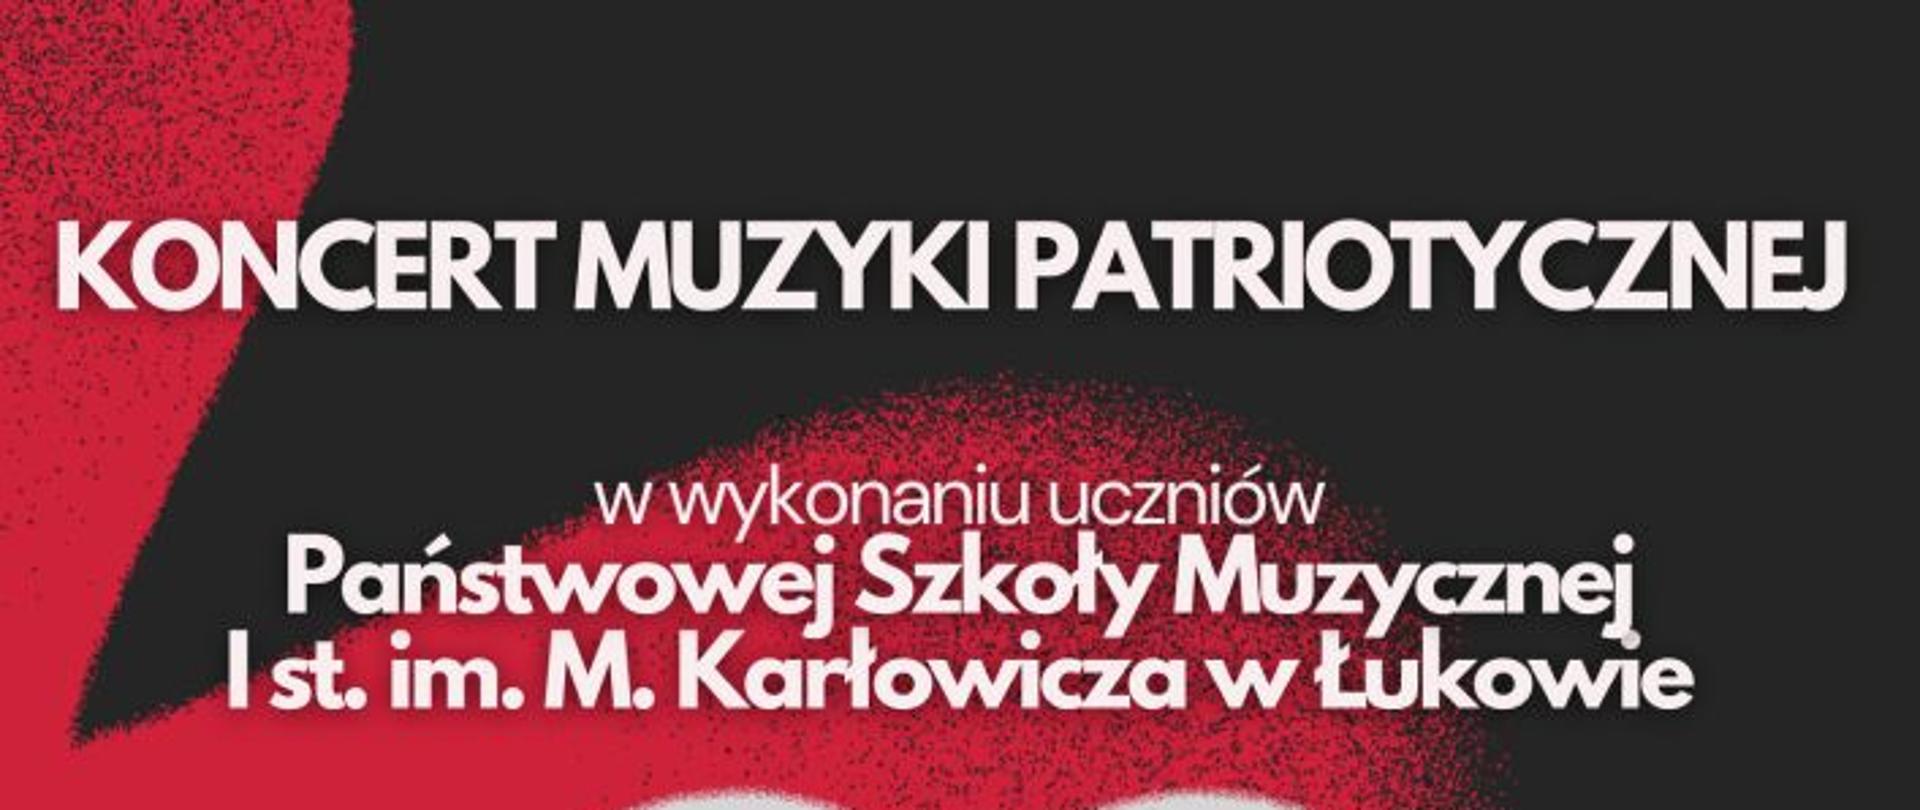 Plakat koncert muzyki patriotycznej